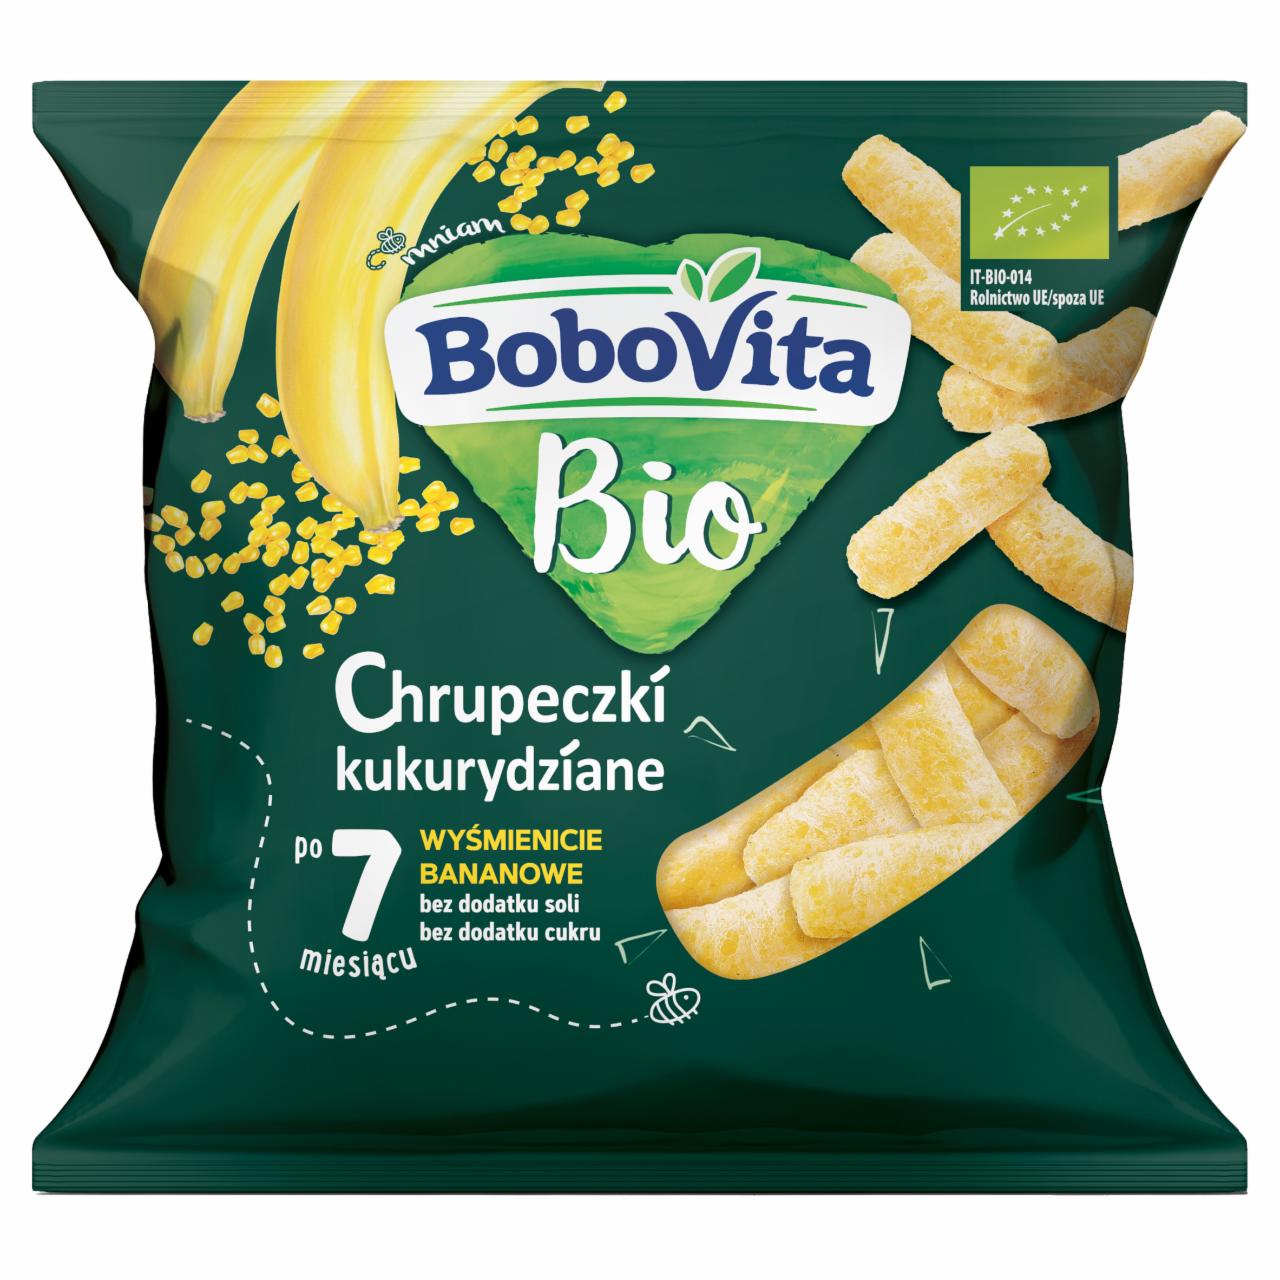 Zdjęcia - BoboVita Bio Chrupeczki kukurydziane wyśmienicie bananowe po 7 miesiącu 20 g